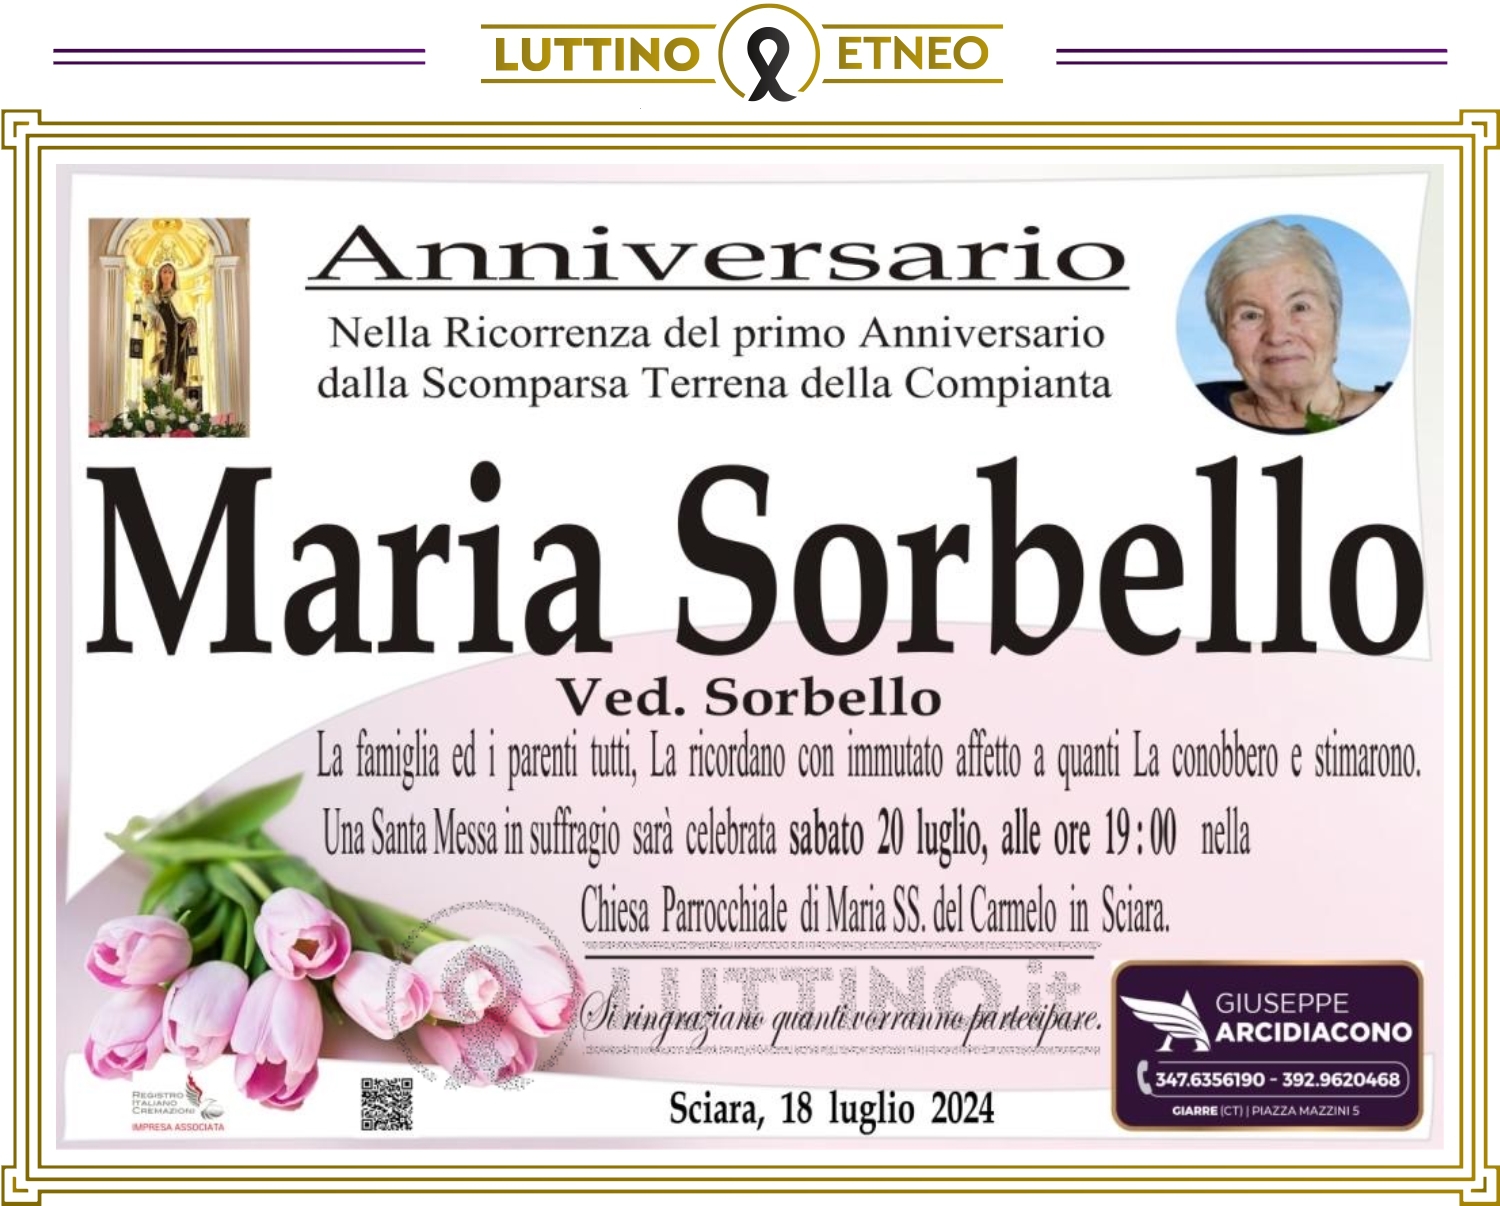 Maria Sorbello